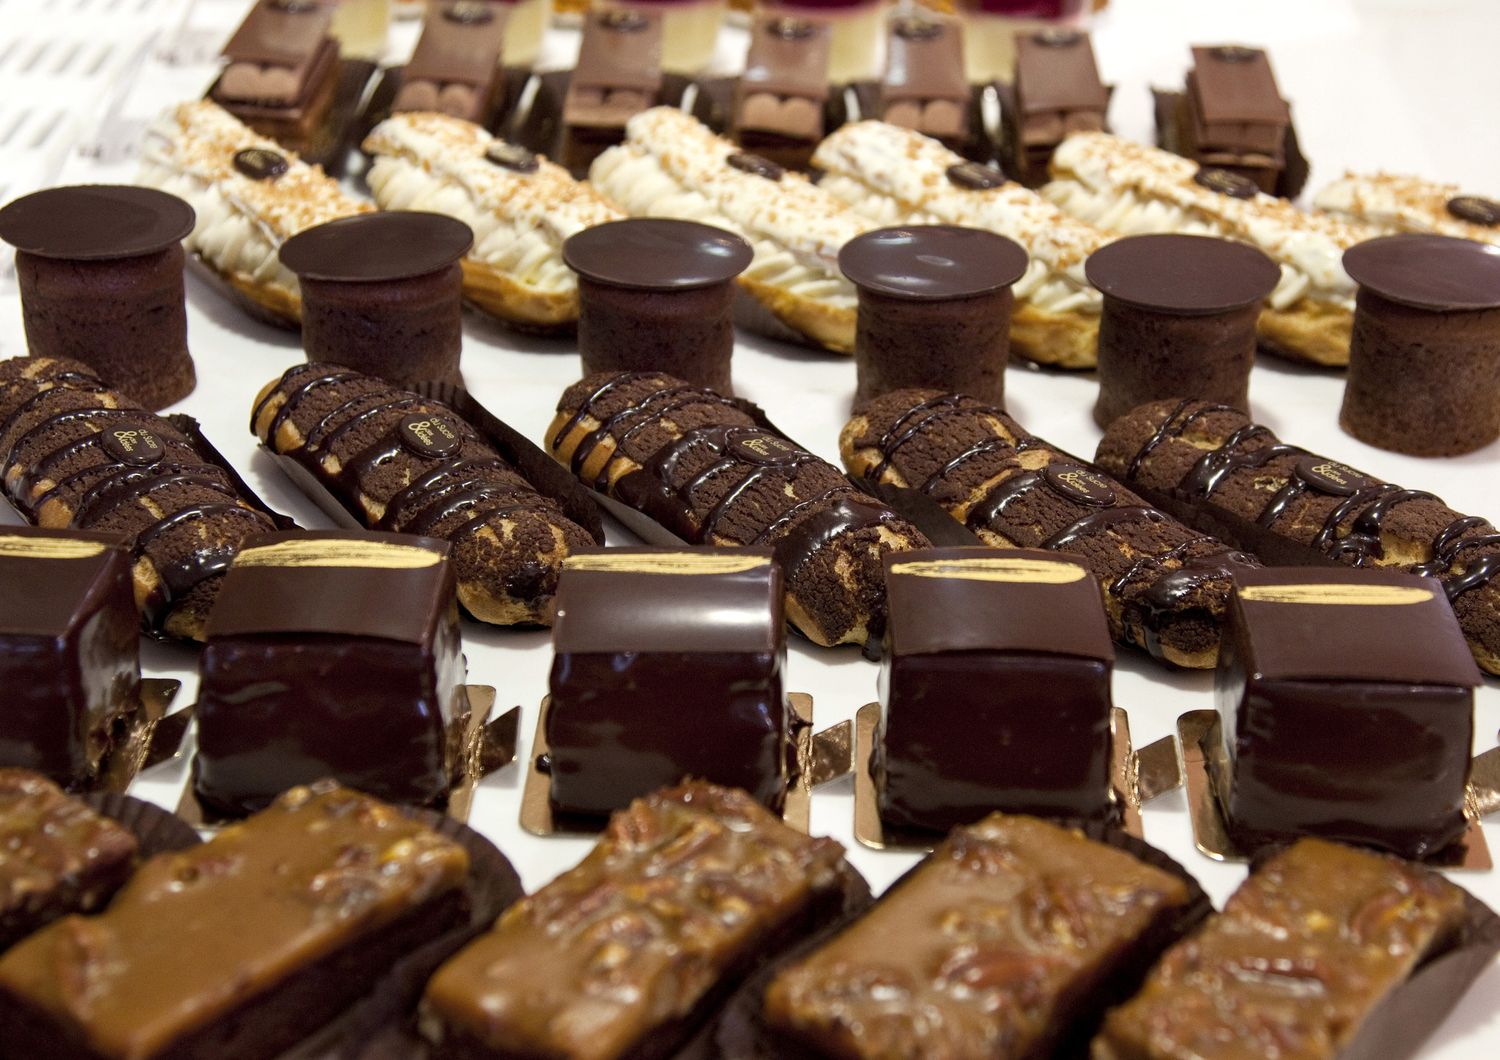 Dolci al cioccolato in pasticceria: alti livelli di glucosio inducono a mentire